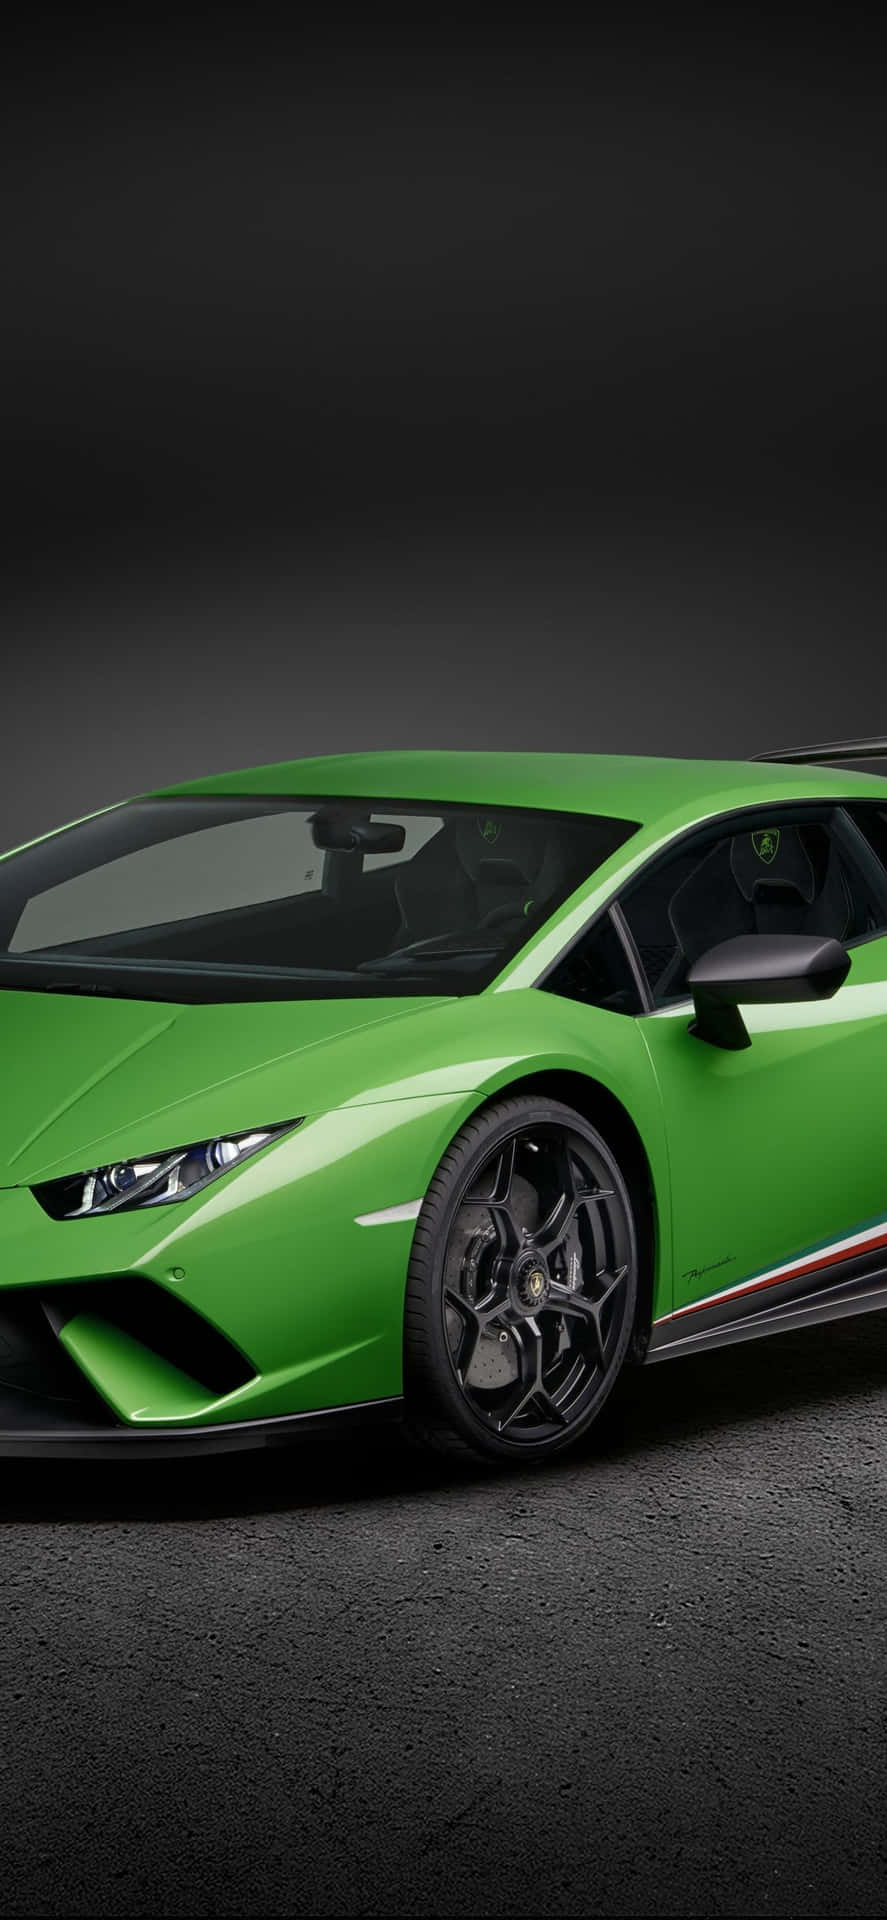 Erlebensie Ihre Reise Auf Einer Neuen Ebene Mit Einem Grünen Lamborghini Iphone. Wallpaper